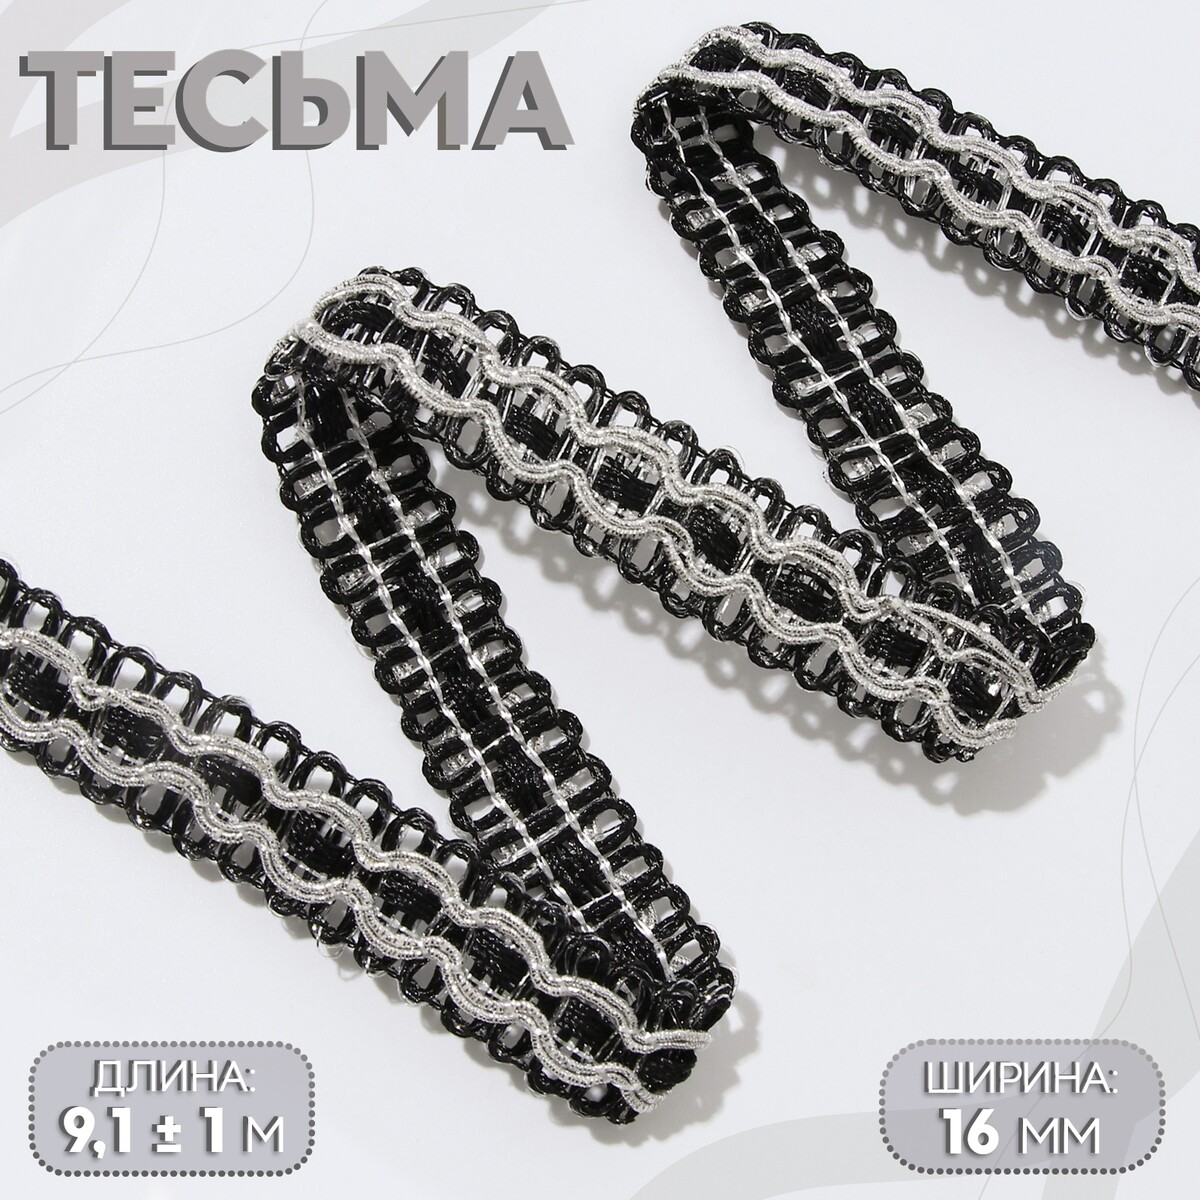 Тесьма декоративная, 16 мм, 9,1 ± 1 м, цвет черный/серебряный тесьма декоративная металлизированная 10 ± 1 м 8 мм серебряный